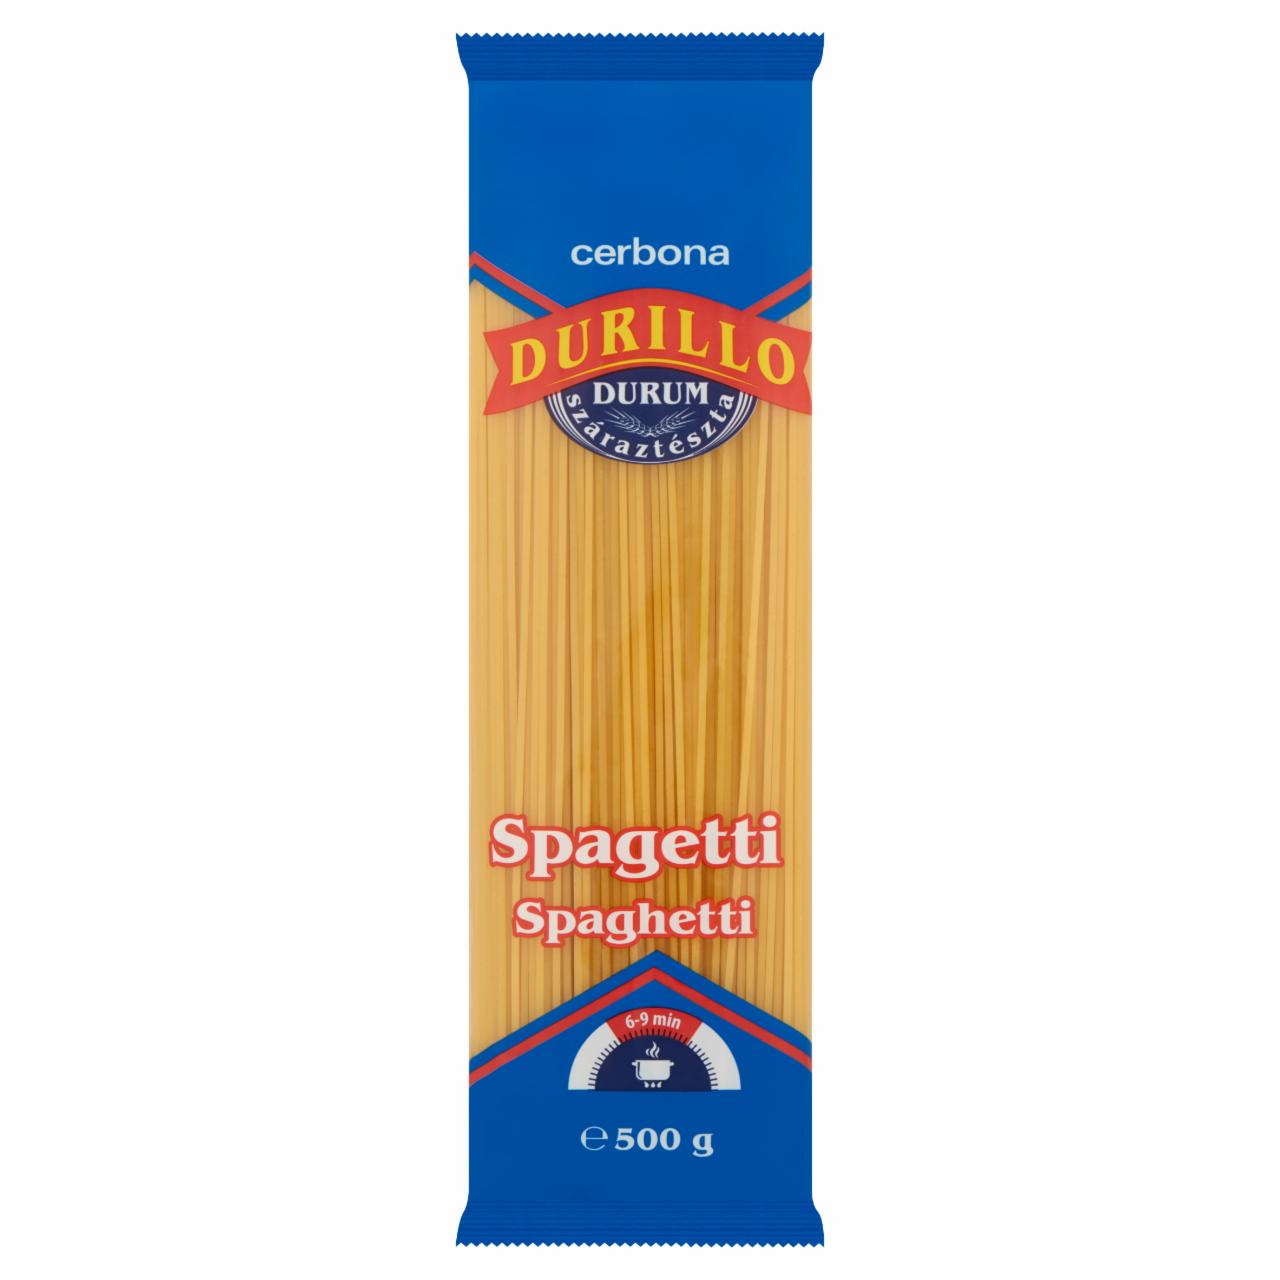 Képek - Durillo spagetti durum száraztészta Cerbona